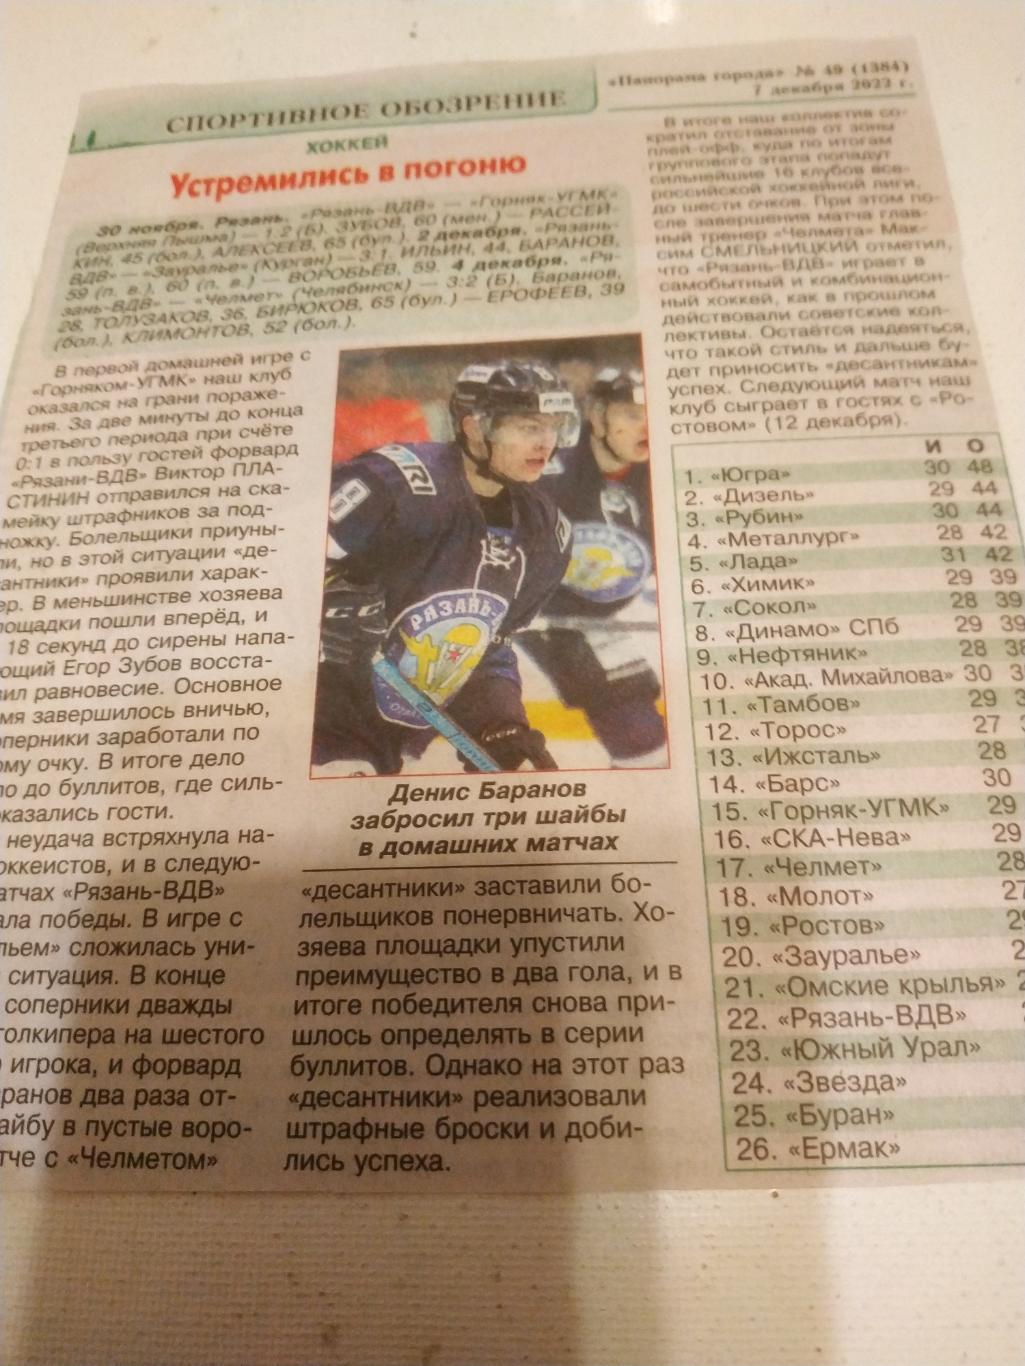 ХК Рязань ВДВ - Курган, Челябинск Верхняя Пышма (Сезон 2022/2023)